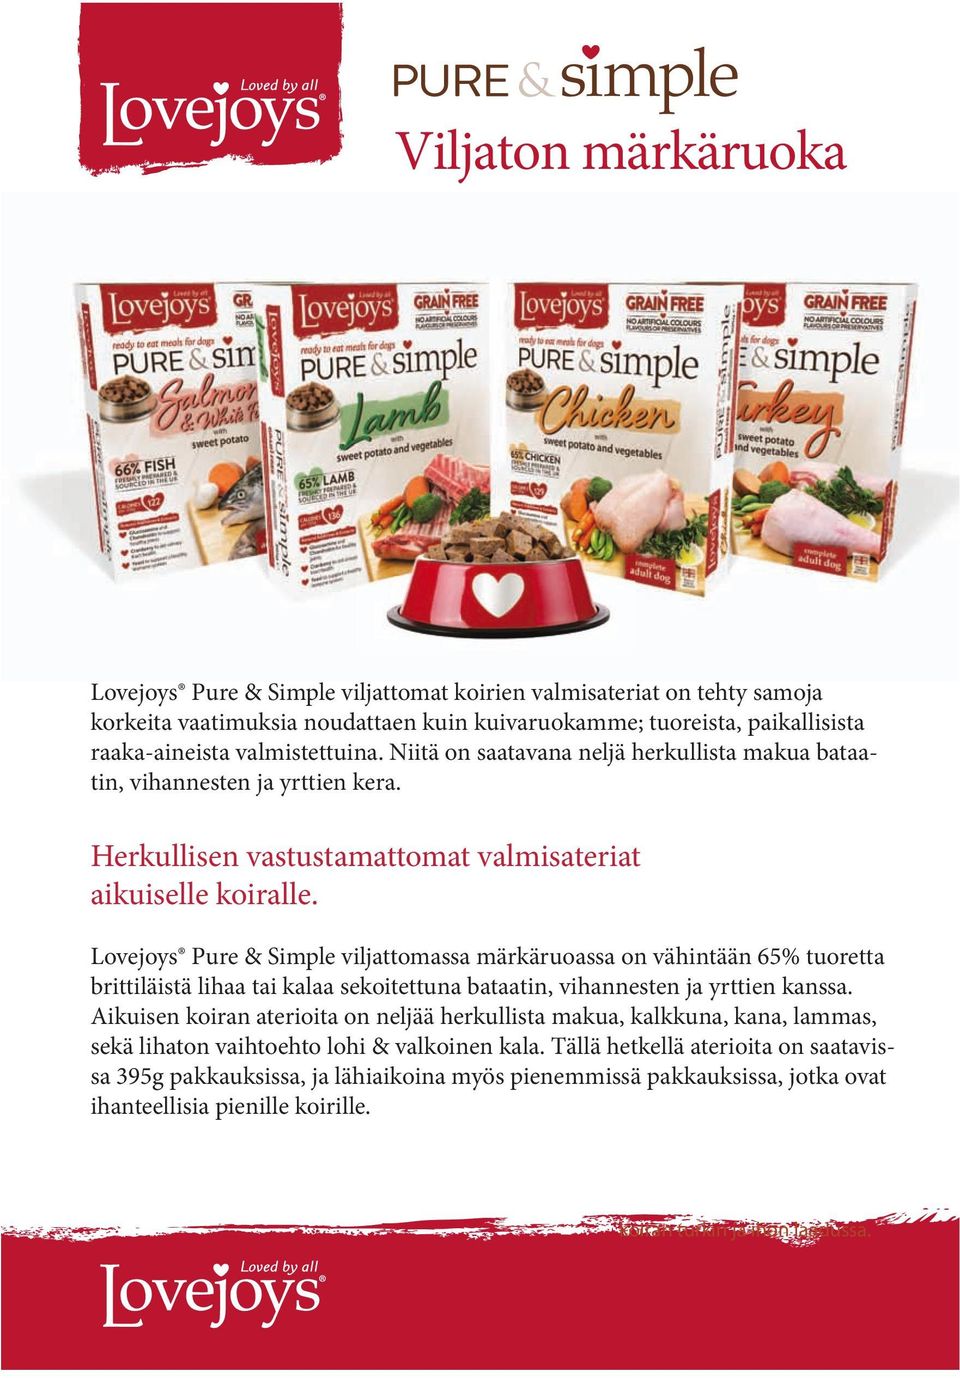 Lovejoys Pure & Simple viljattomassa märkäruoassa on vähintään 65% tuoretta brittiläistä lihaa tai kalaa sekoitettuna bataatin, vihannesten ja yrttien kanssa.